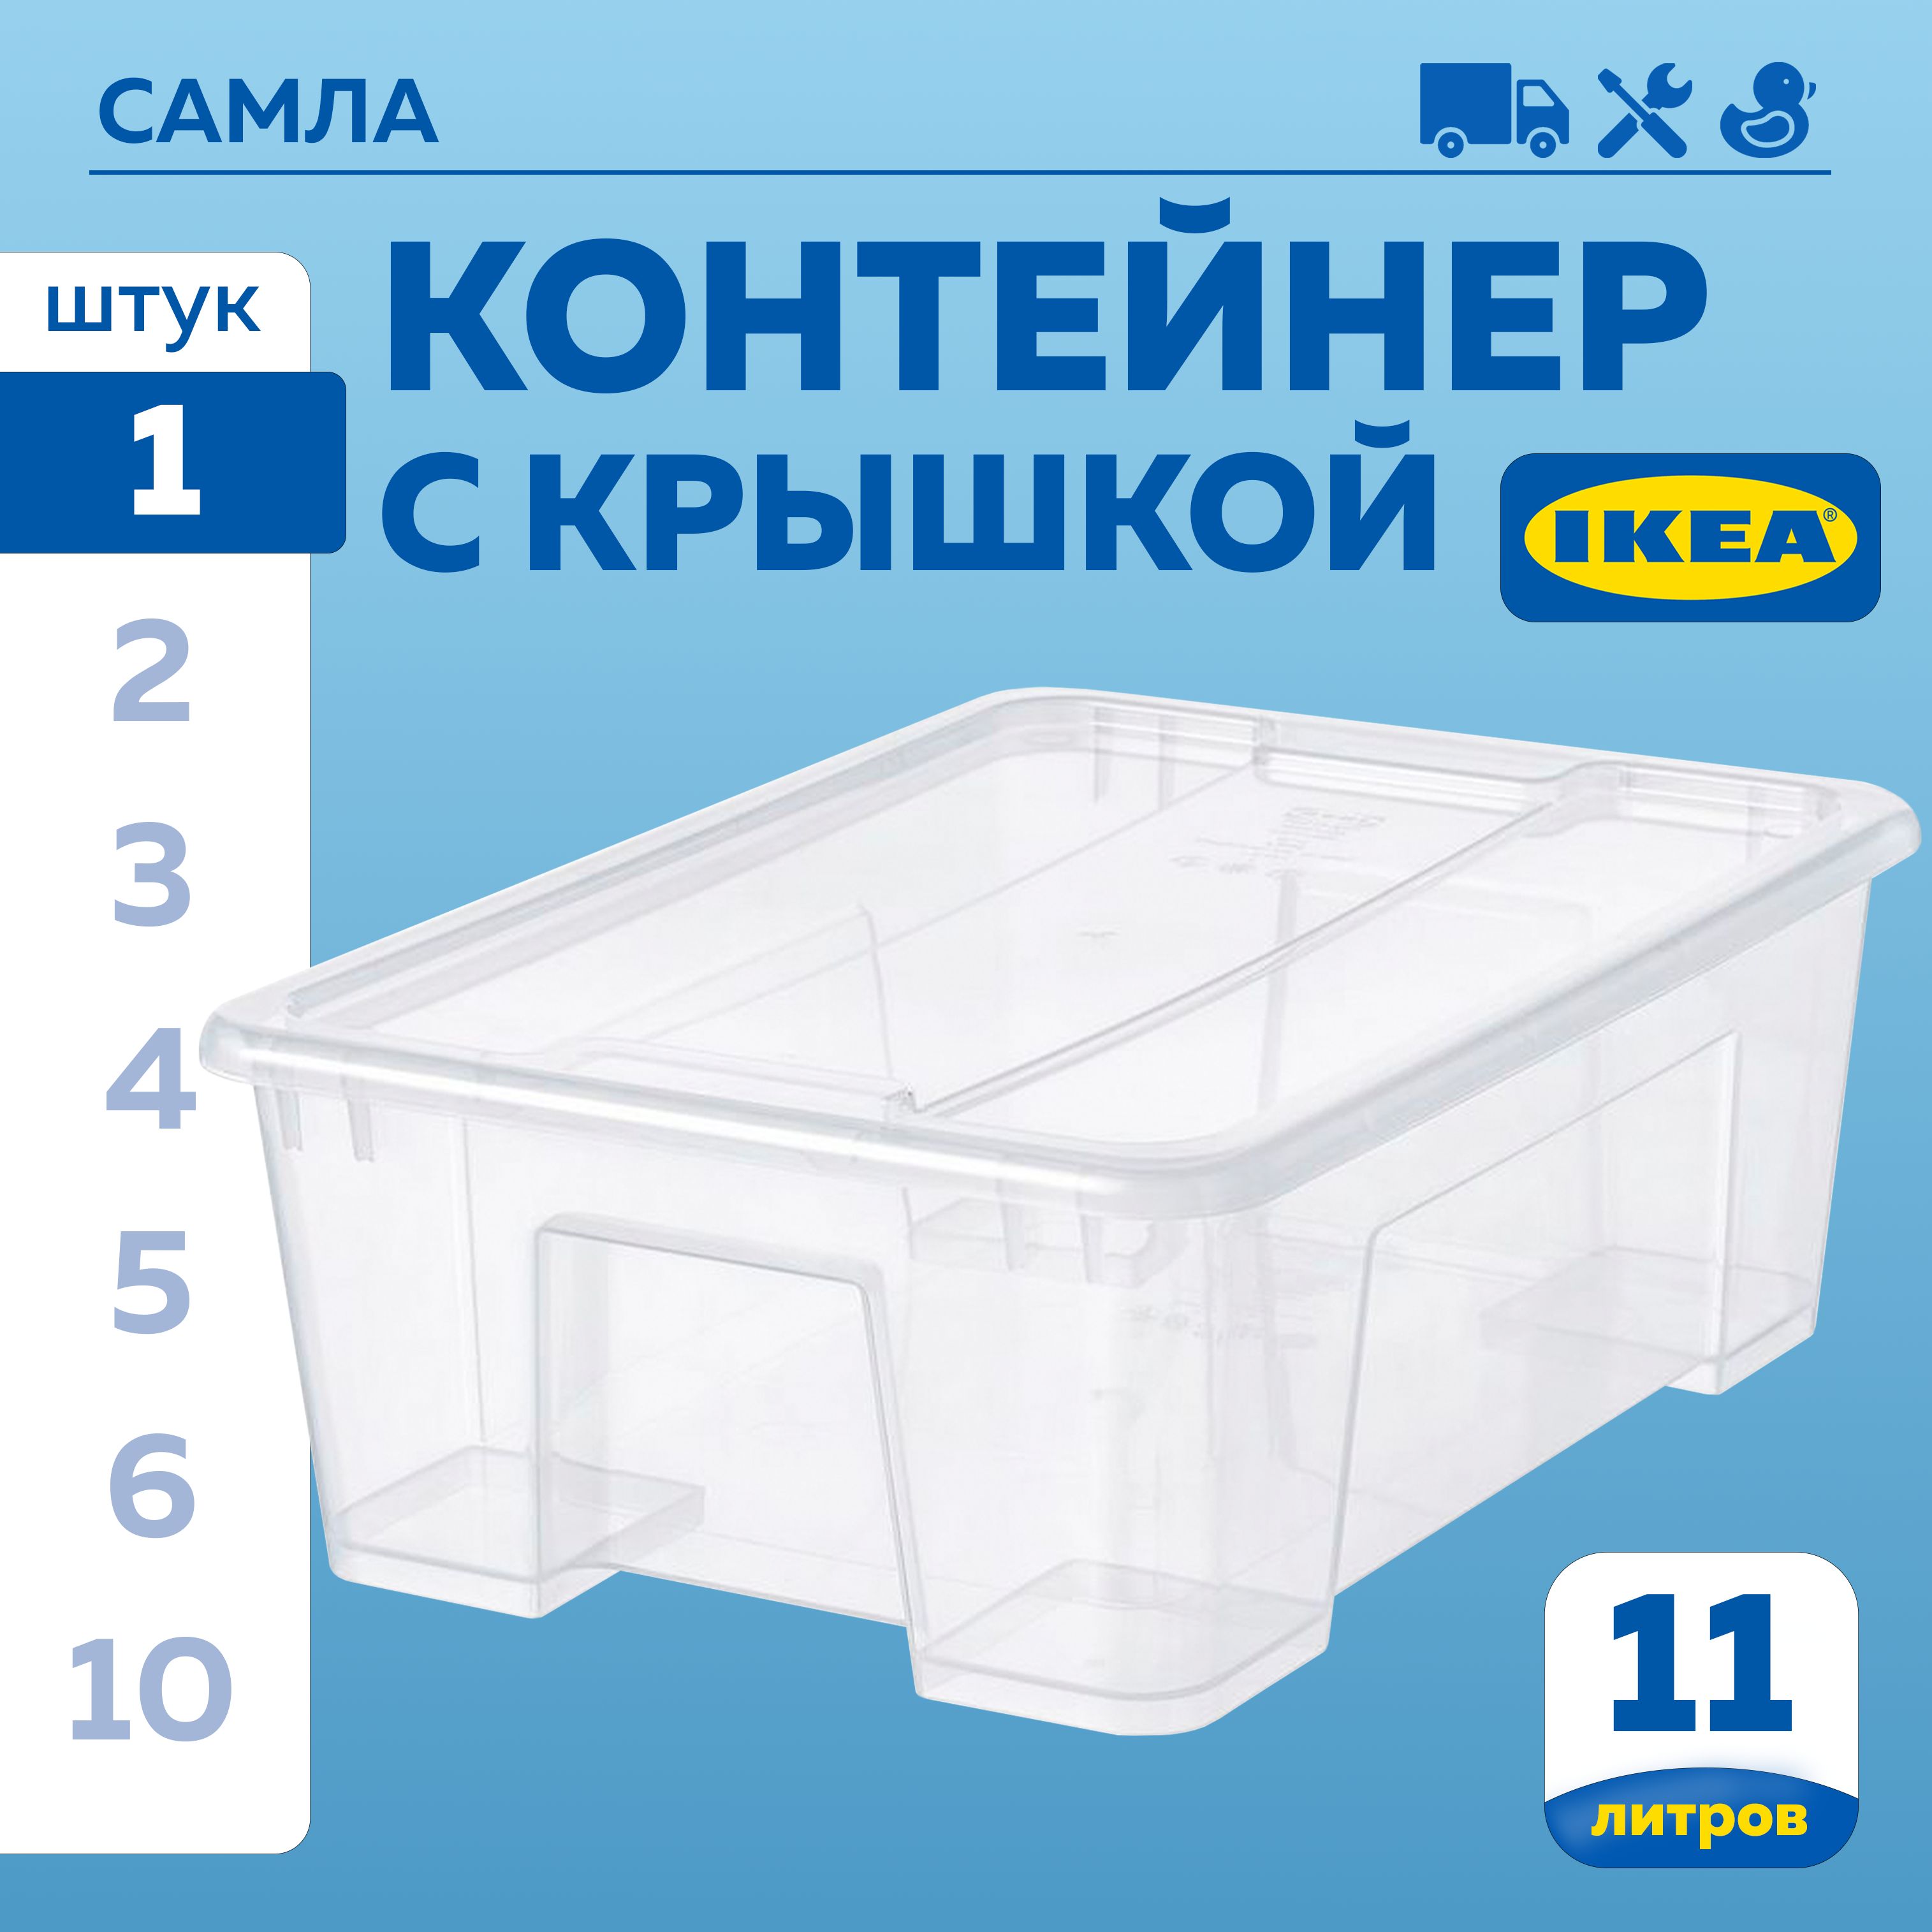 Контейнер для хранения ИКЕА САМЛА (IKEA SAMLA), 39х28х14 см, 11 л, контейнер с крышкой, прозрачный